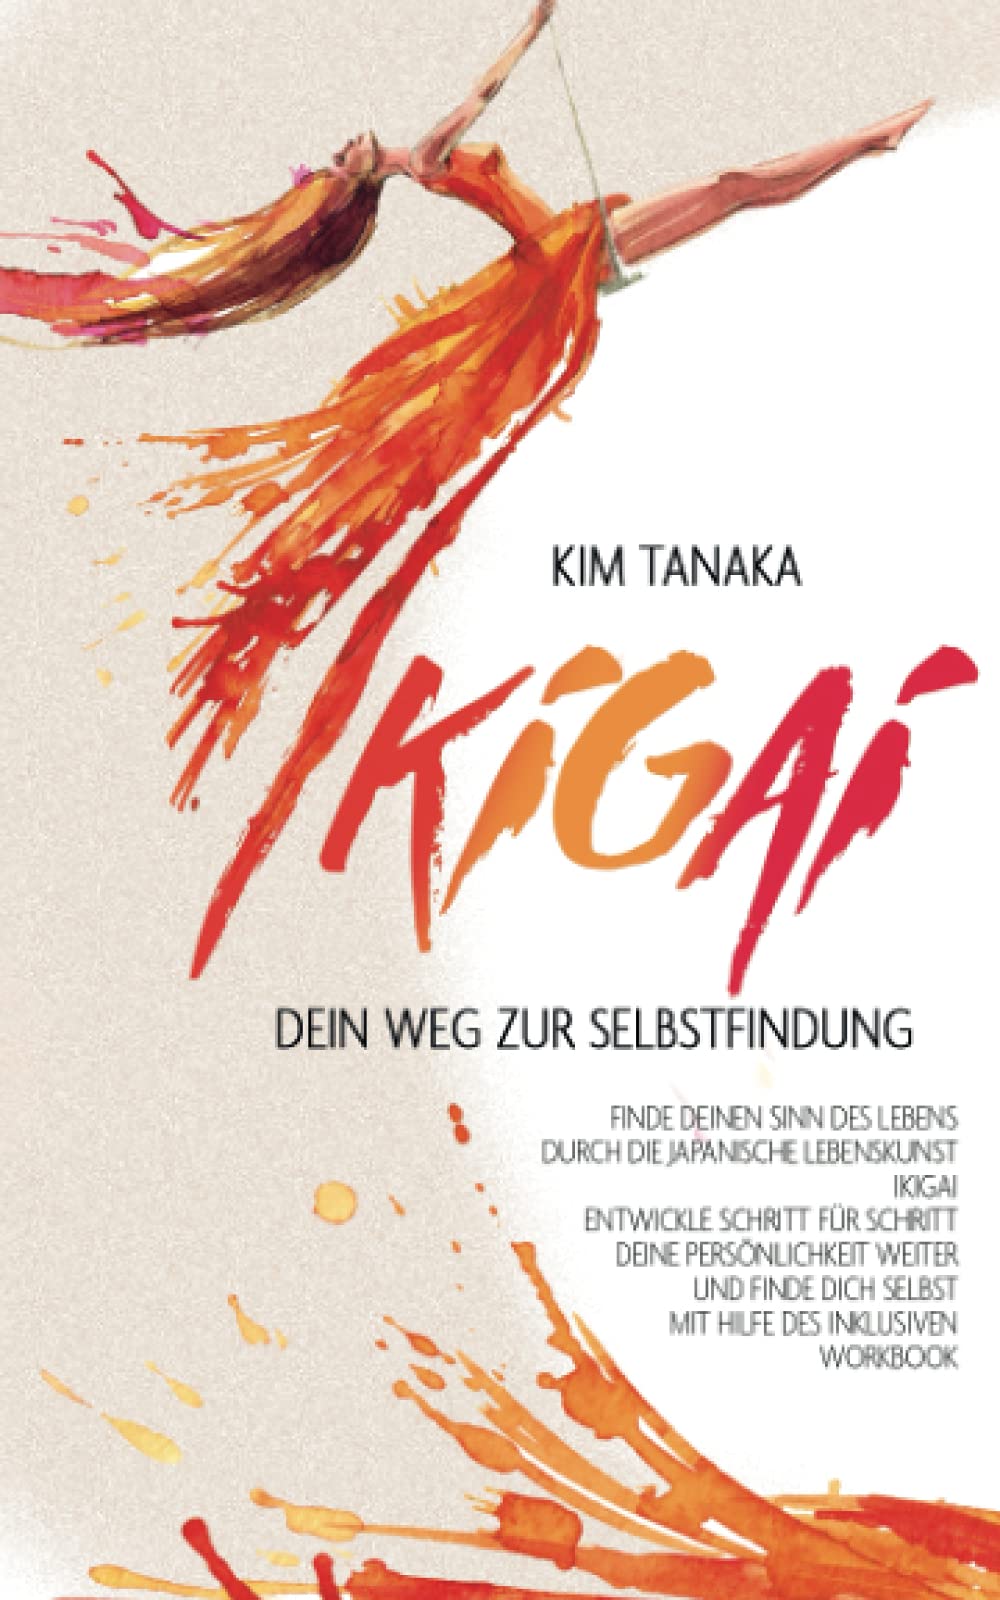 Ikigai: Dein Weg zur Selbstfindung | Finde deinen Sinn des Lebens durch die japanische Lebenskunst Ikigai – Entwickle Schritt für Schritt deine … selbst mit Hilfe des inklusiven Workbooks von Kim Tanaka